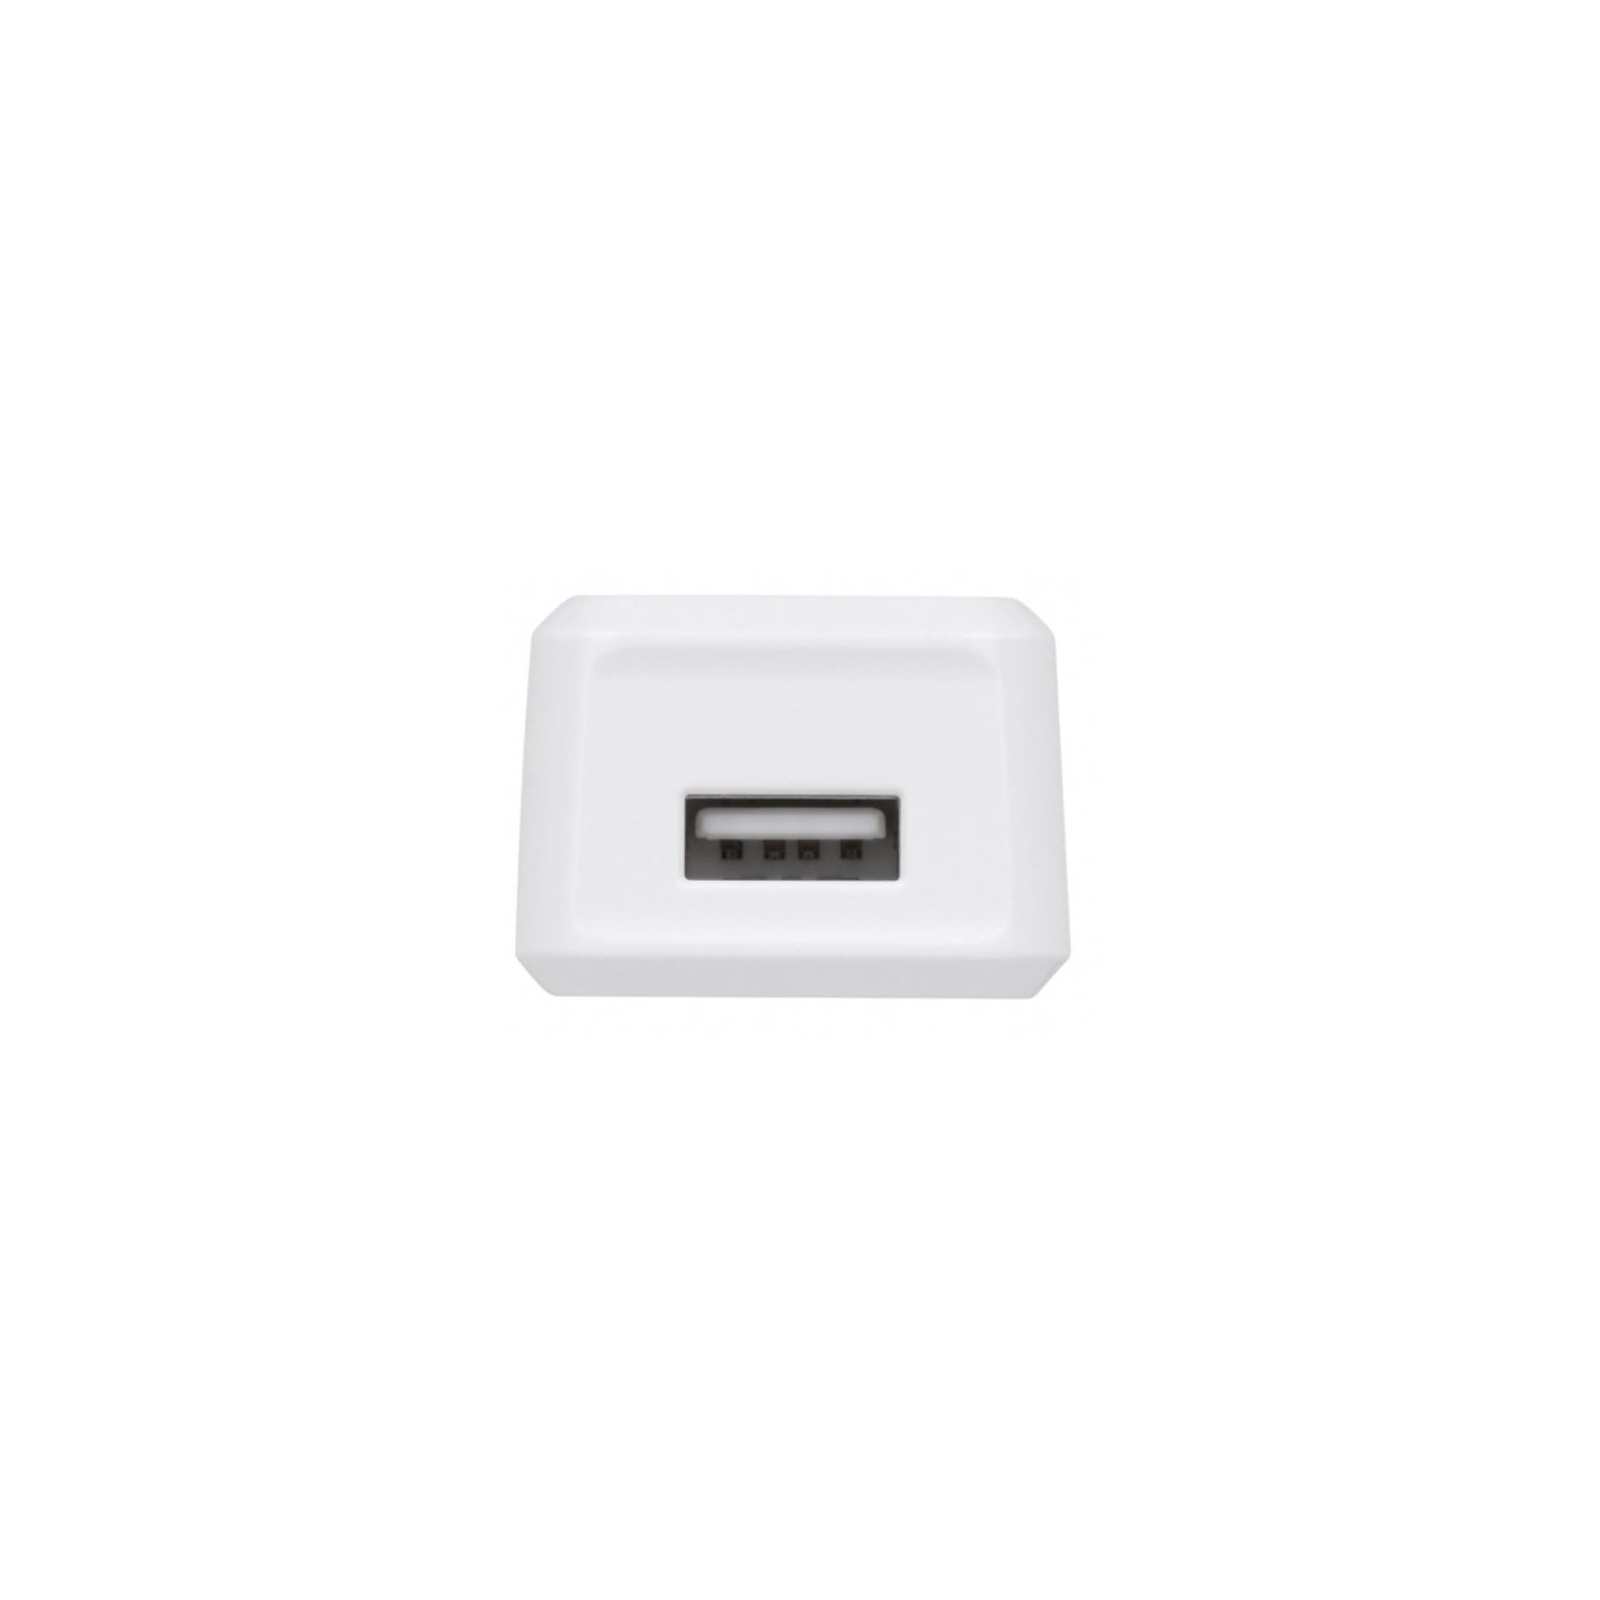 Зарядное устройство 2E USB Wall Charger USB:DC5V/1A, white (2E-WC1USB1A-W) изображение 3